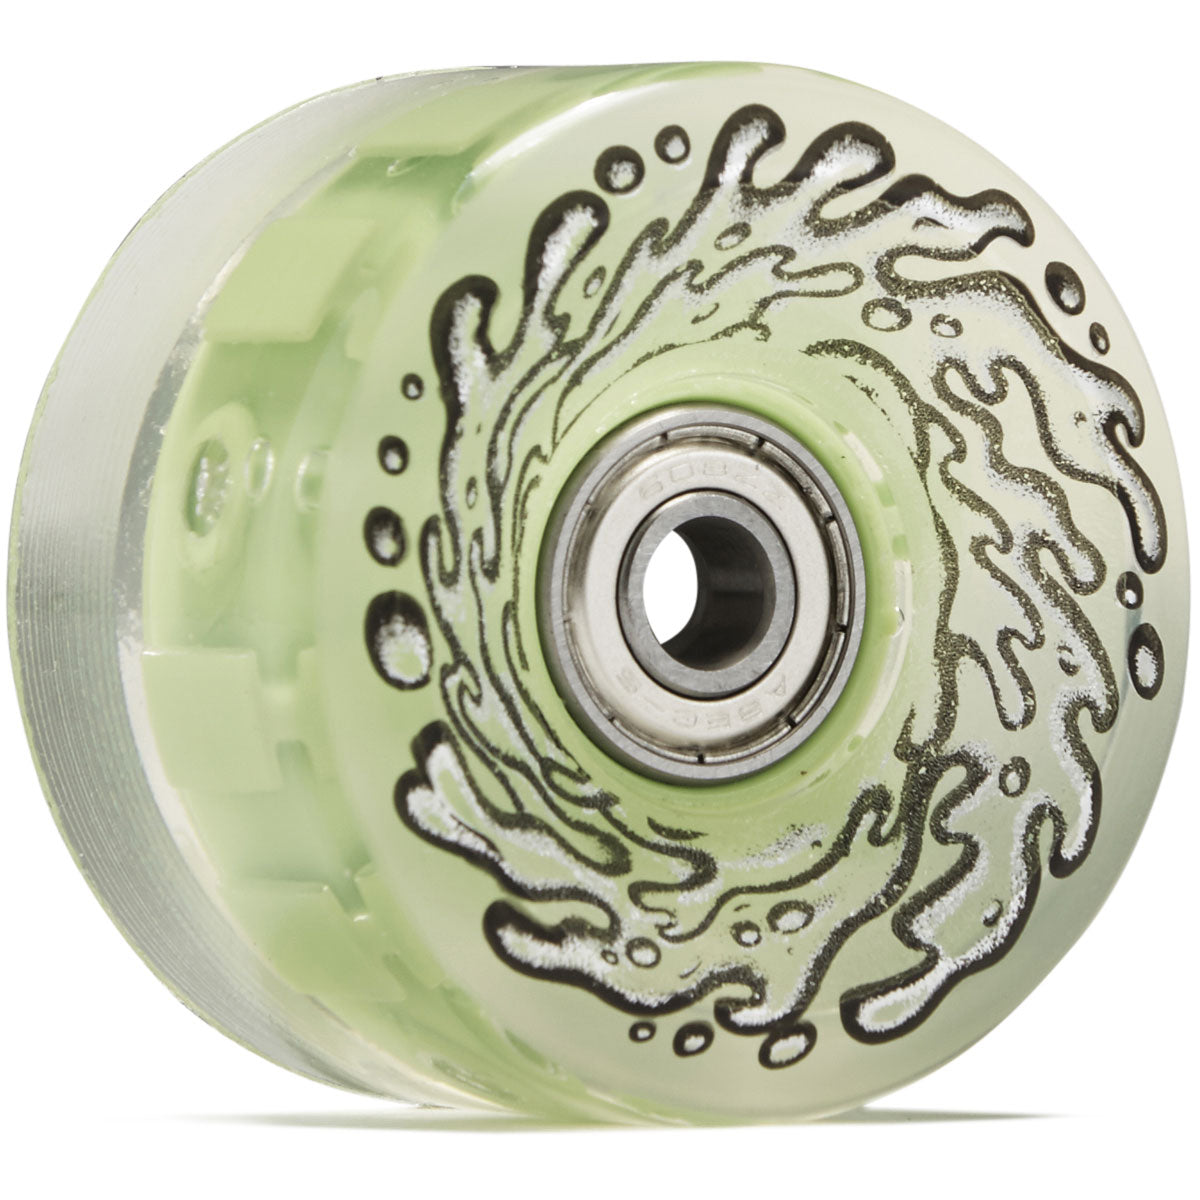 Slime Balls Light Ups OG Slime 78a Skateboard Wheels - Green - 60mm image 1